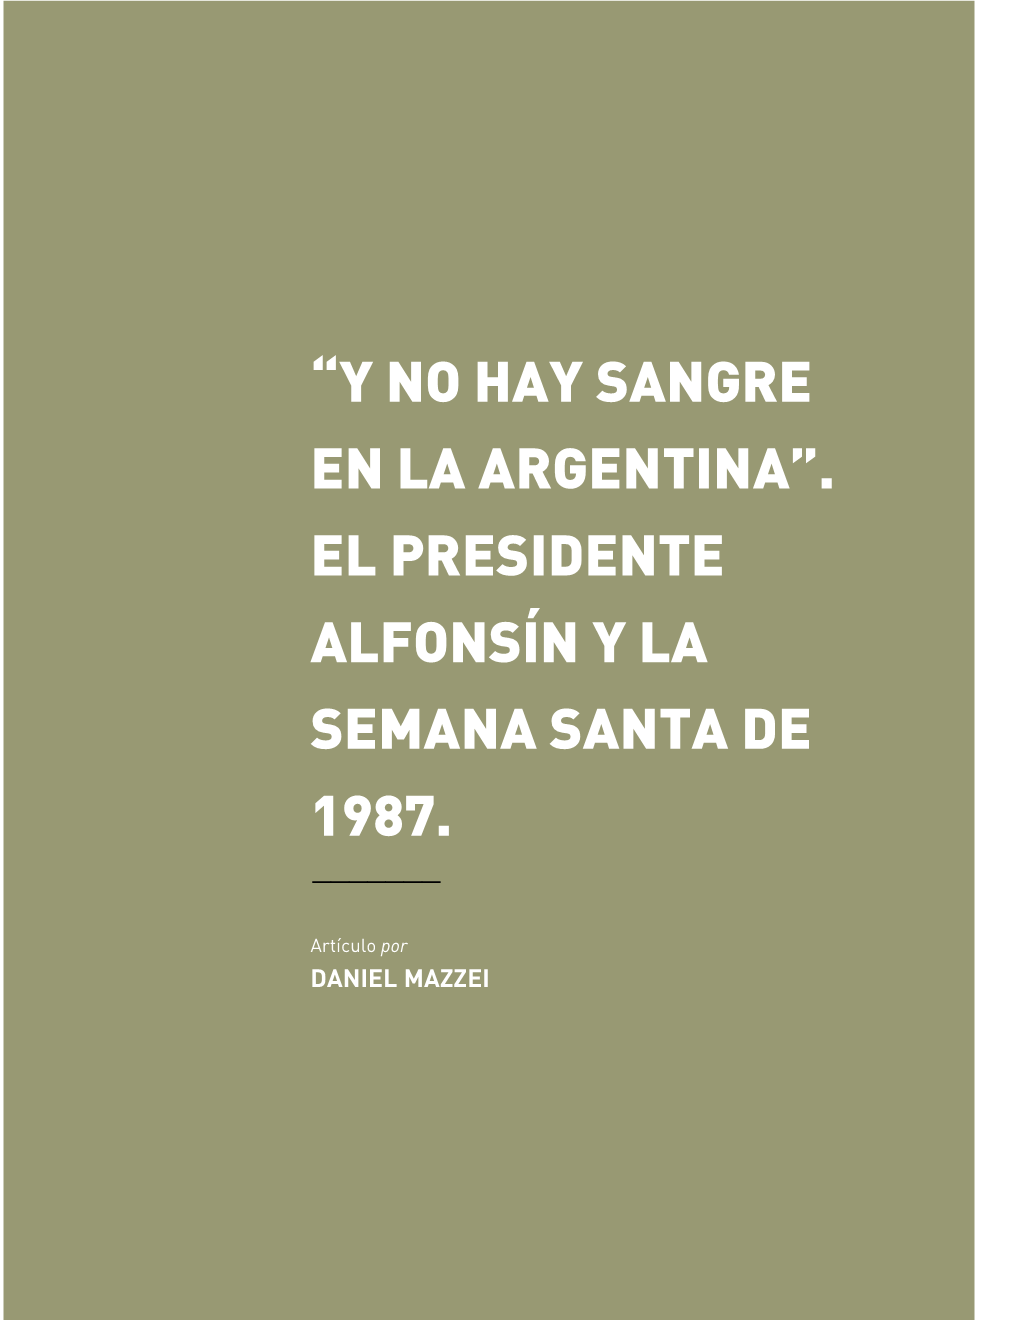 El Presidente Alfonsín Y La Semana Santa De 1987. ———————